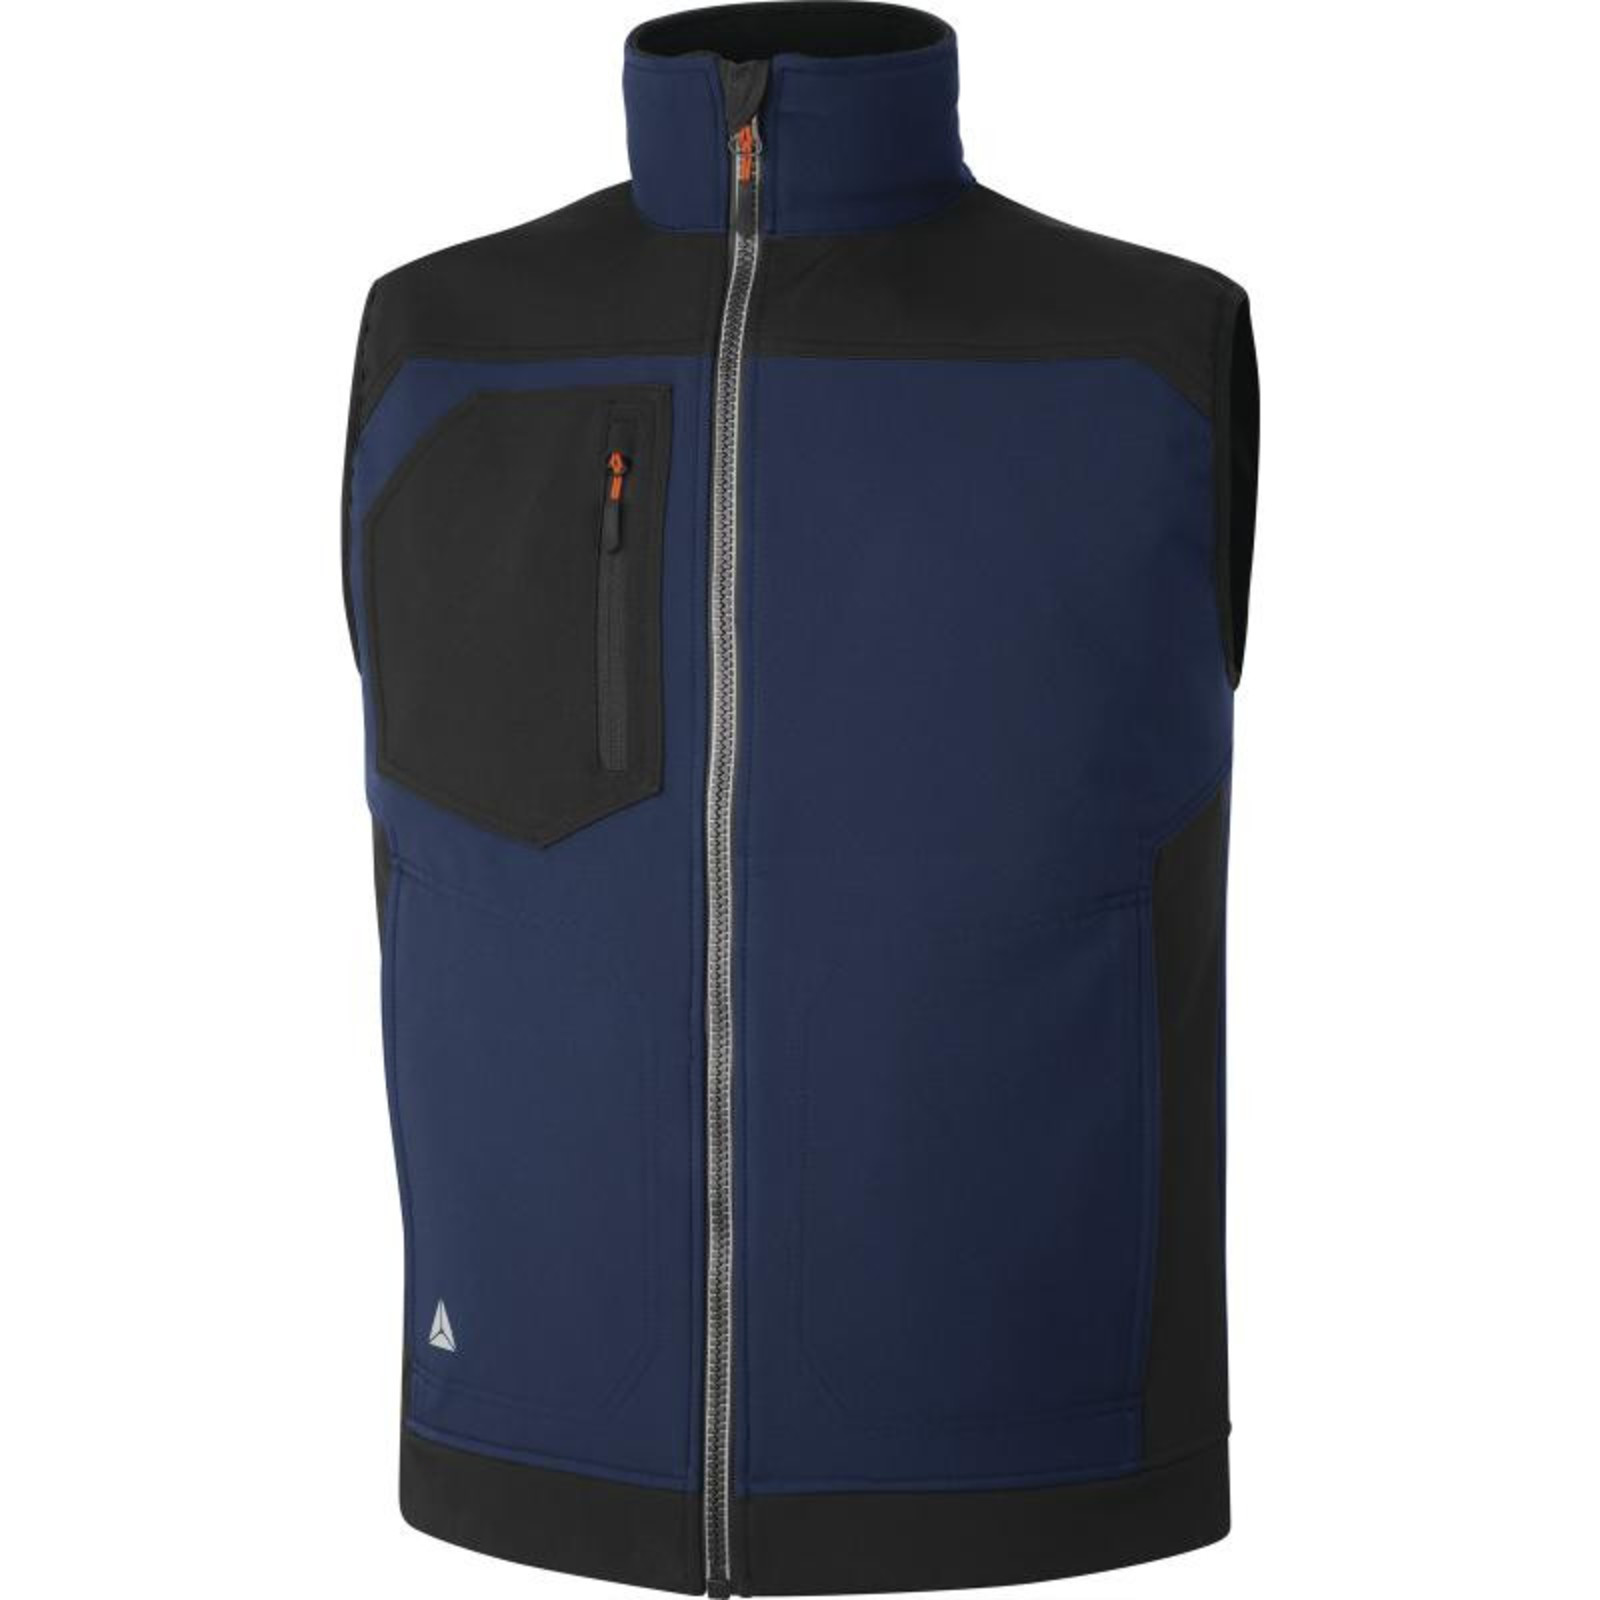 Softshellová vesta Delta Plus Holen - veľkosť: XXL, farba: námornícka modrá/čierna